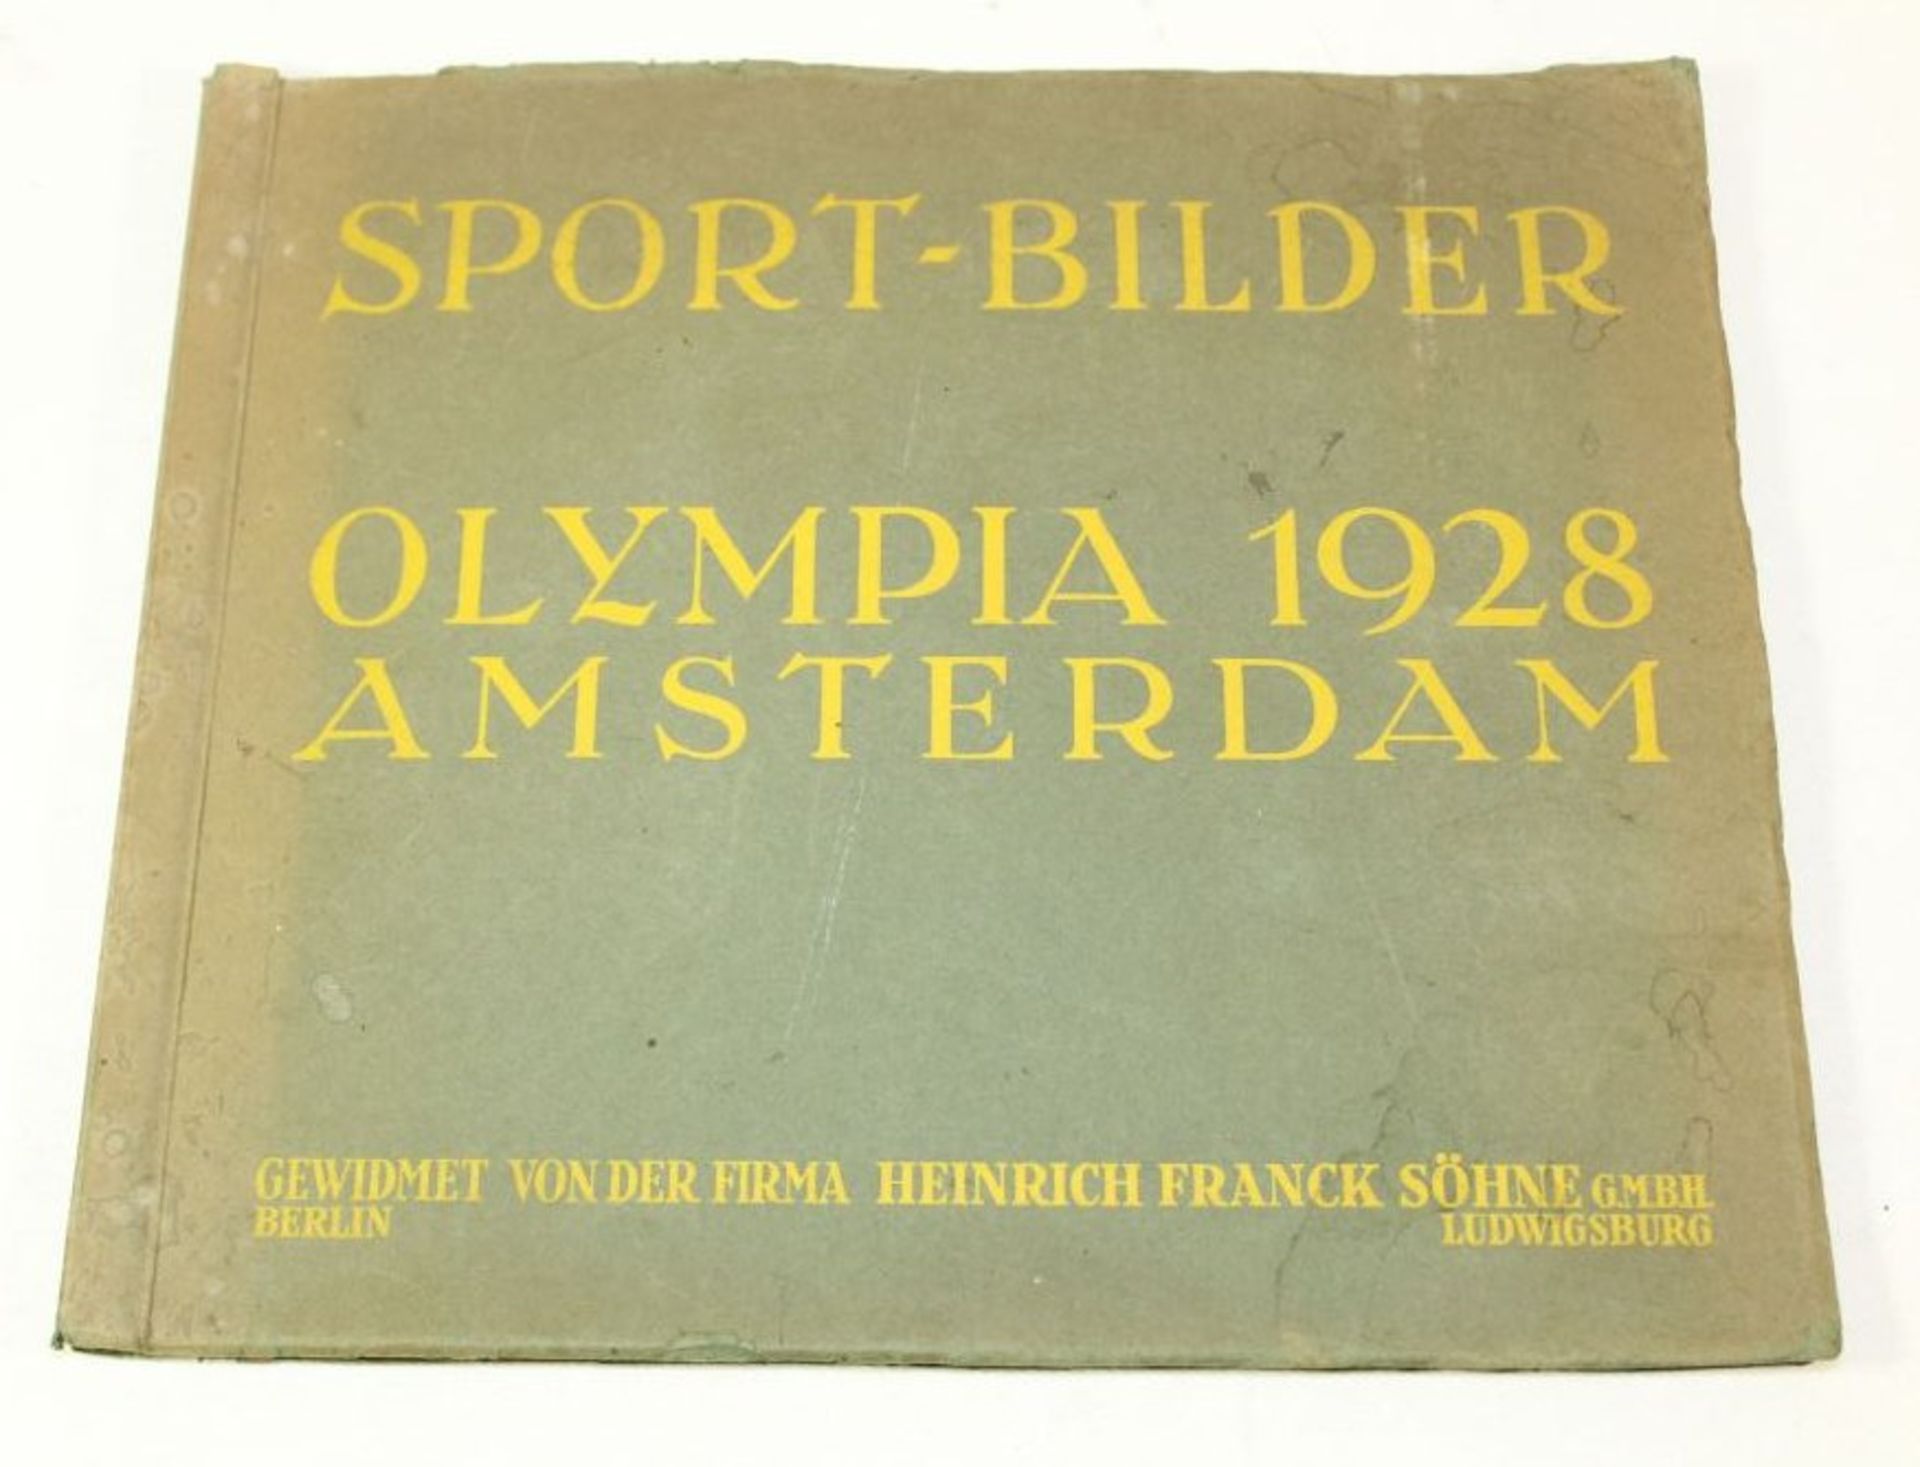 Sammelalbum "Olympia 1928", komplett.- - -22.61 % buyer's premium on the hammer priceVAT margin